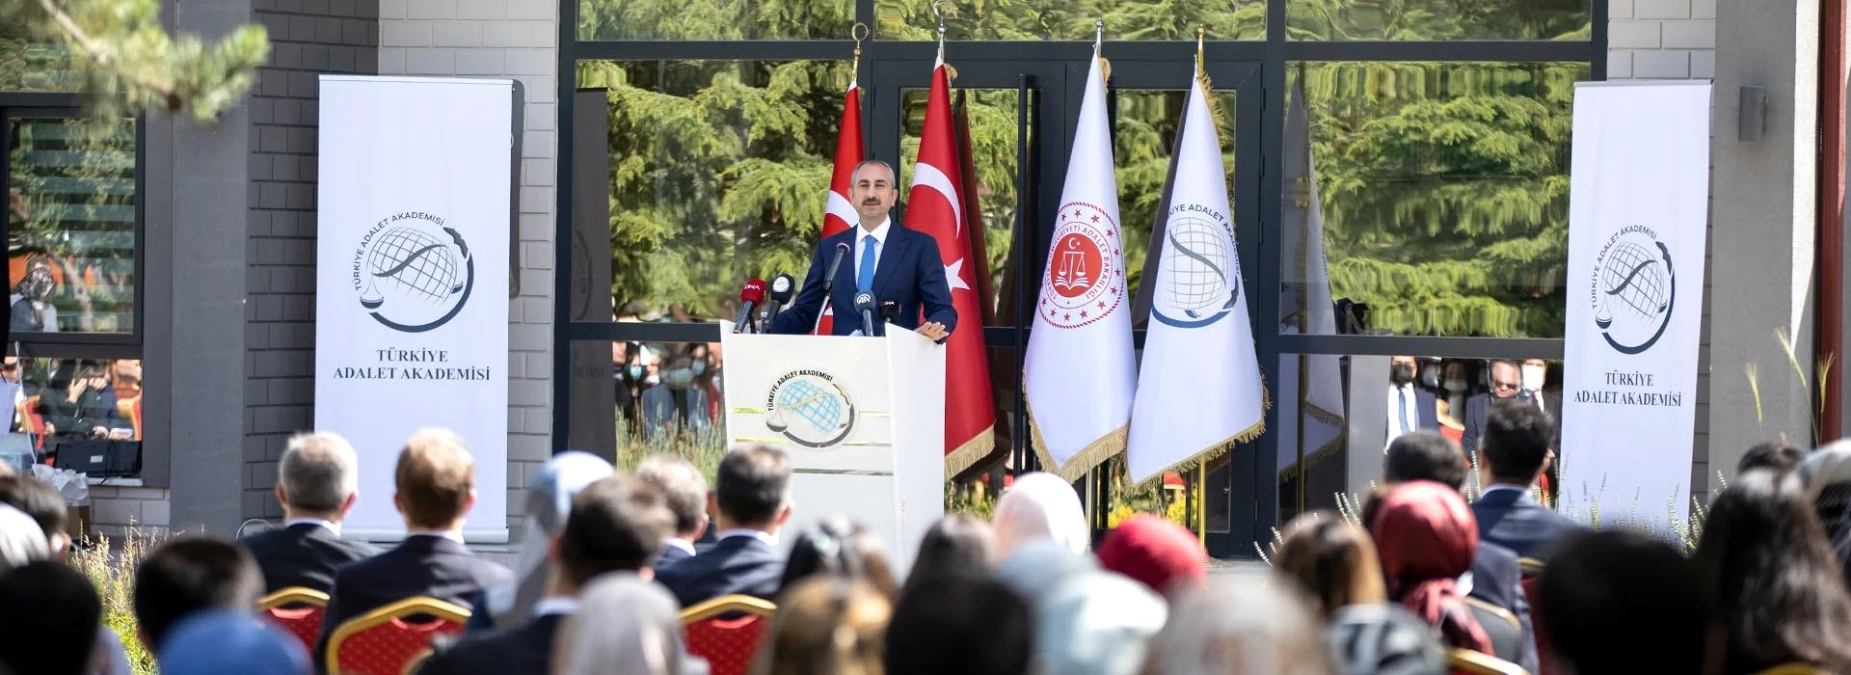 Adalet Bakanı Gül, Türkiye Adalet Akademisinde düzenlenen ödül töreninde konuştu Açıklaması